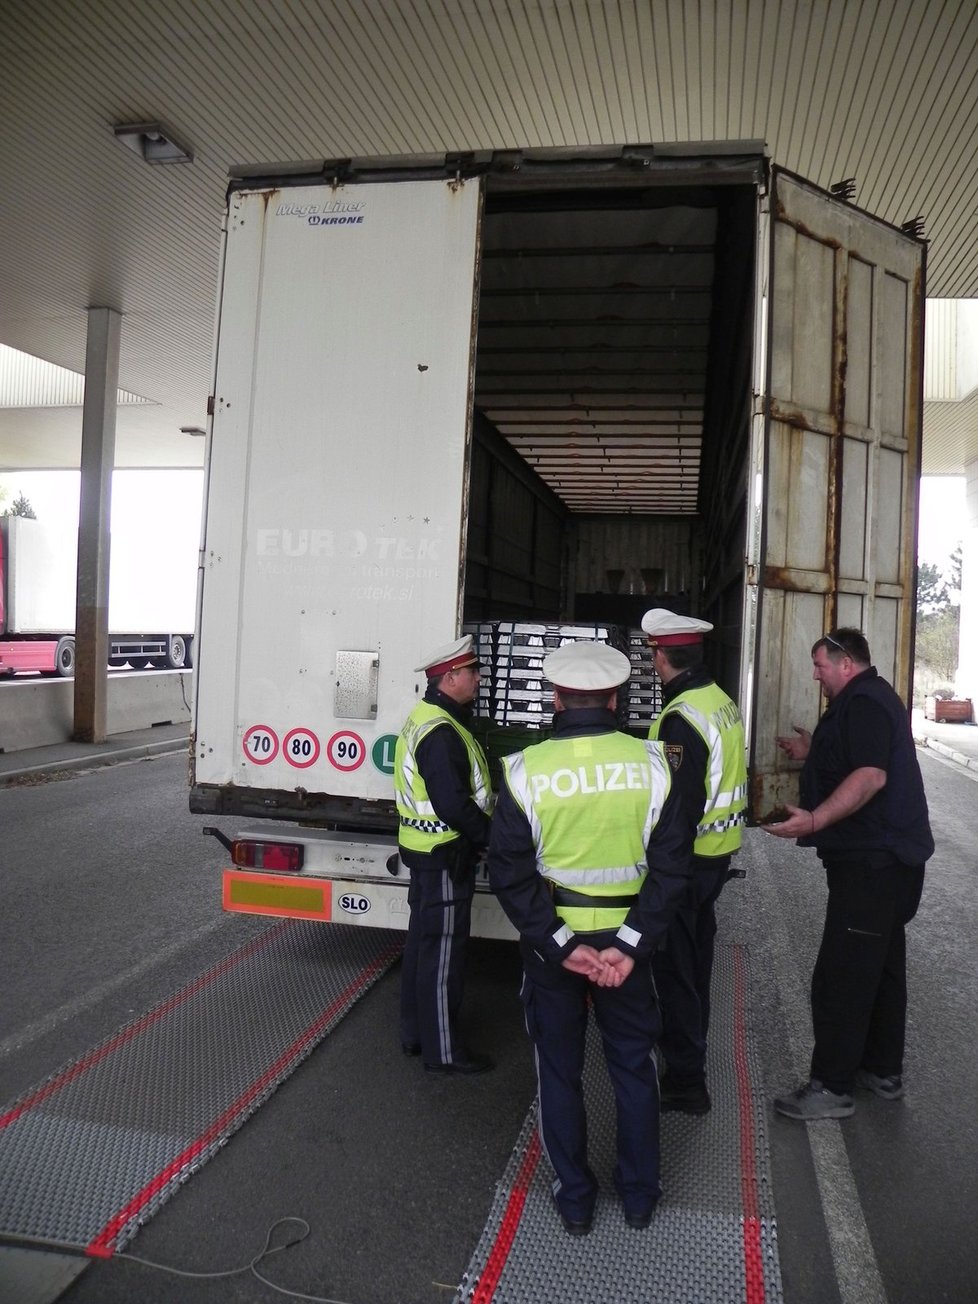 Společné česko-rakouské policejní hlídky zkontrolovaly na někdejším hraničním přechodu během dopoledne desítky aut včetně tohoto slovinského kamionu.